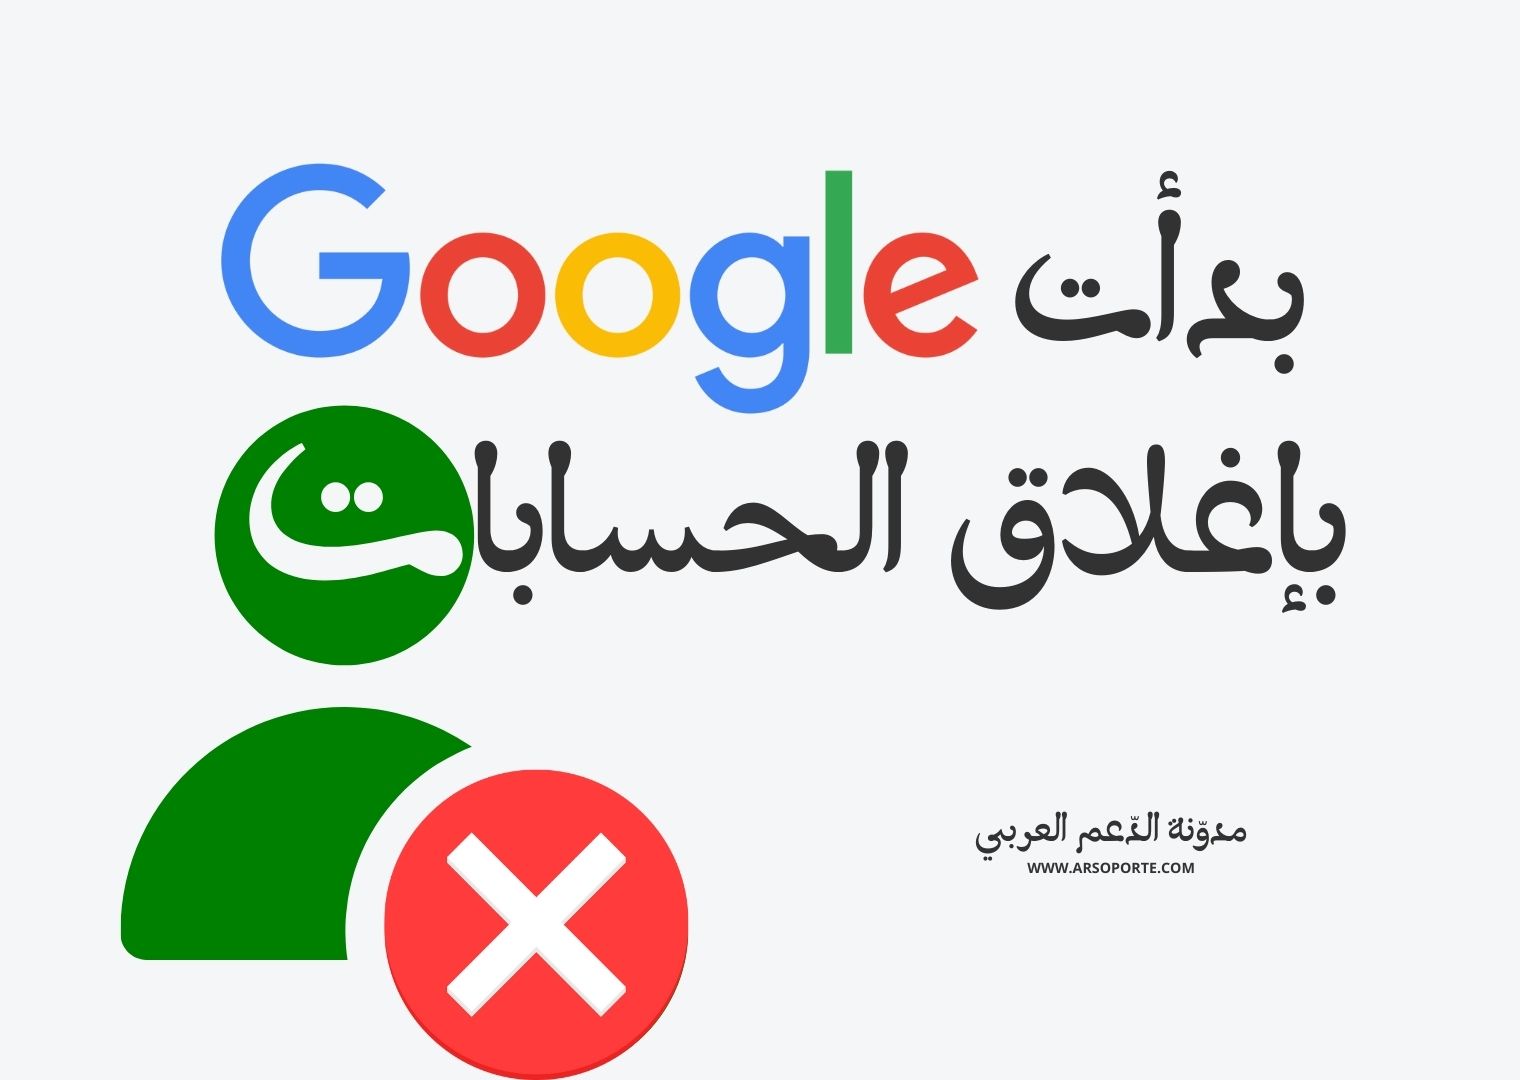 خبر: بدأت جوجل بإغلاق الحسابات غير النشطة